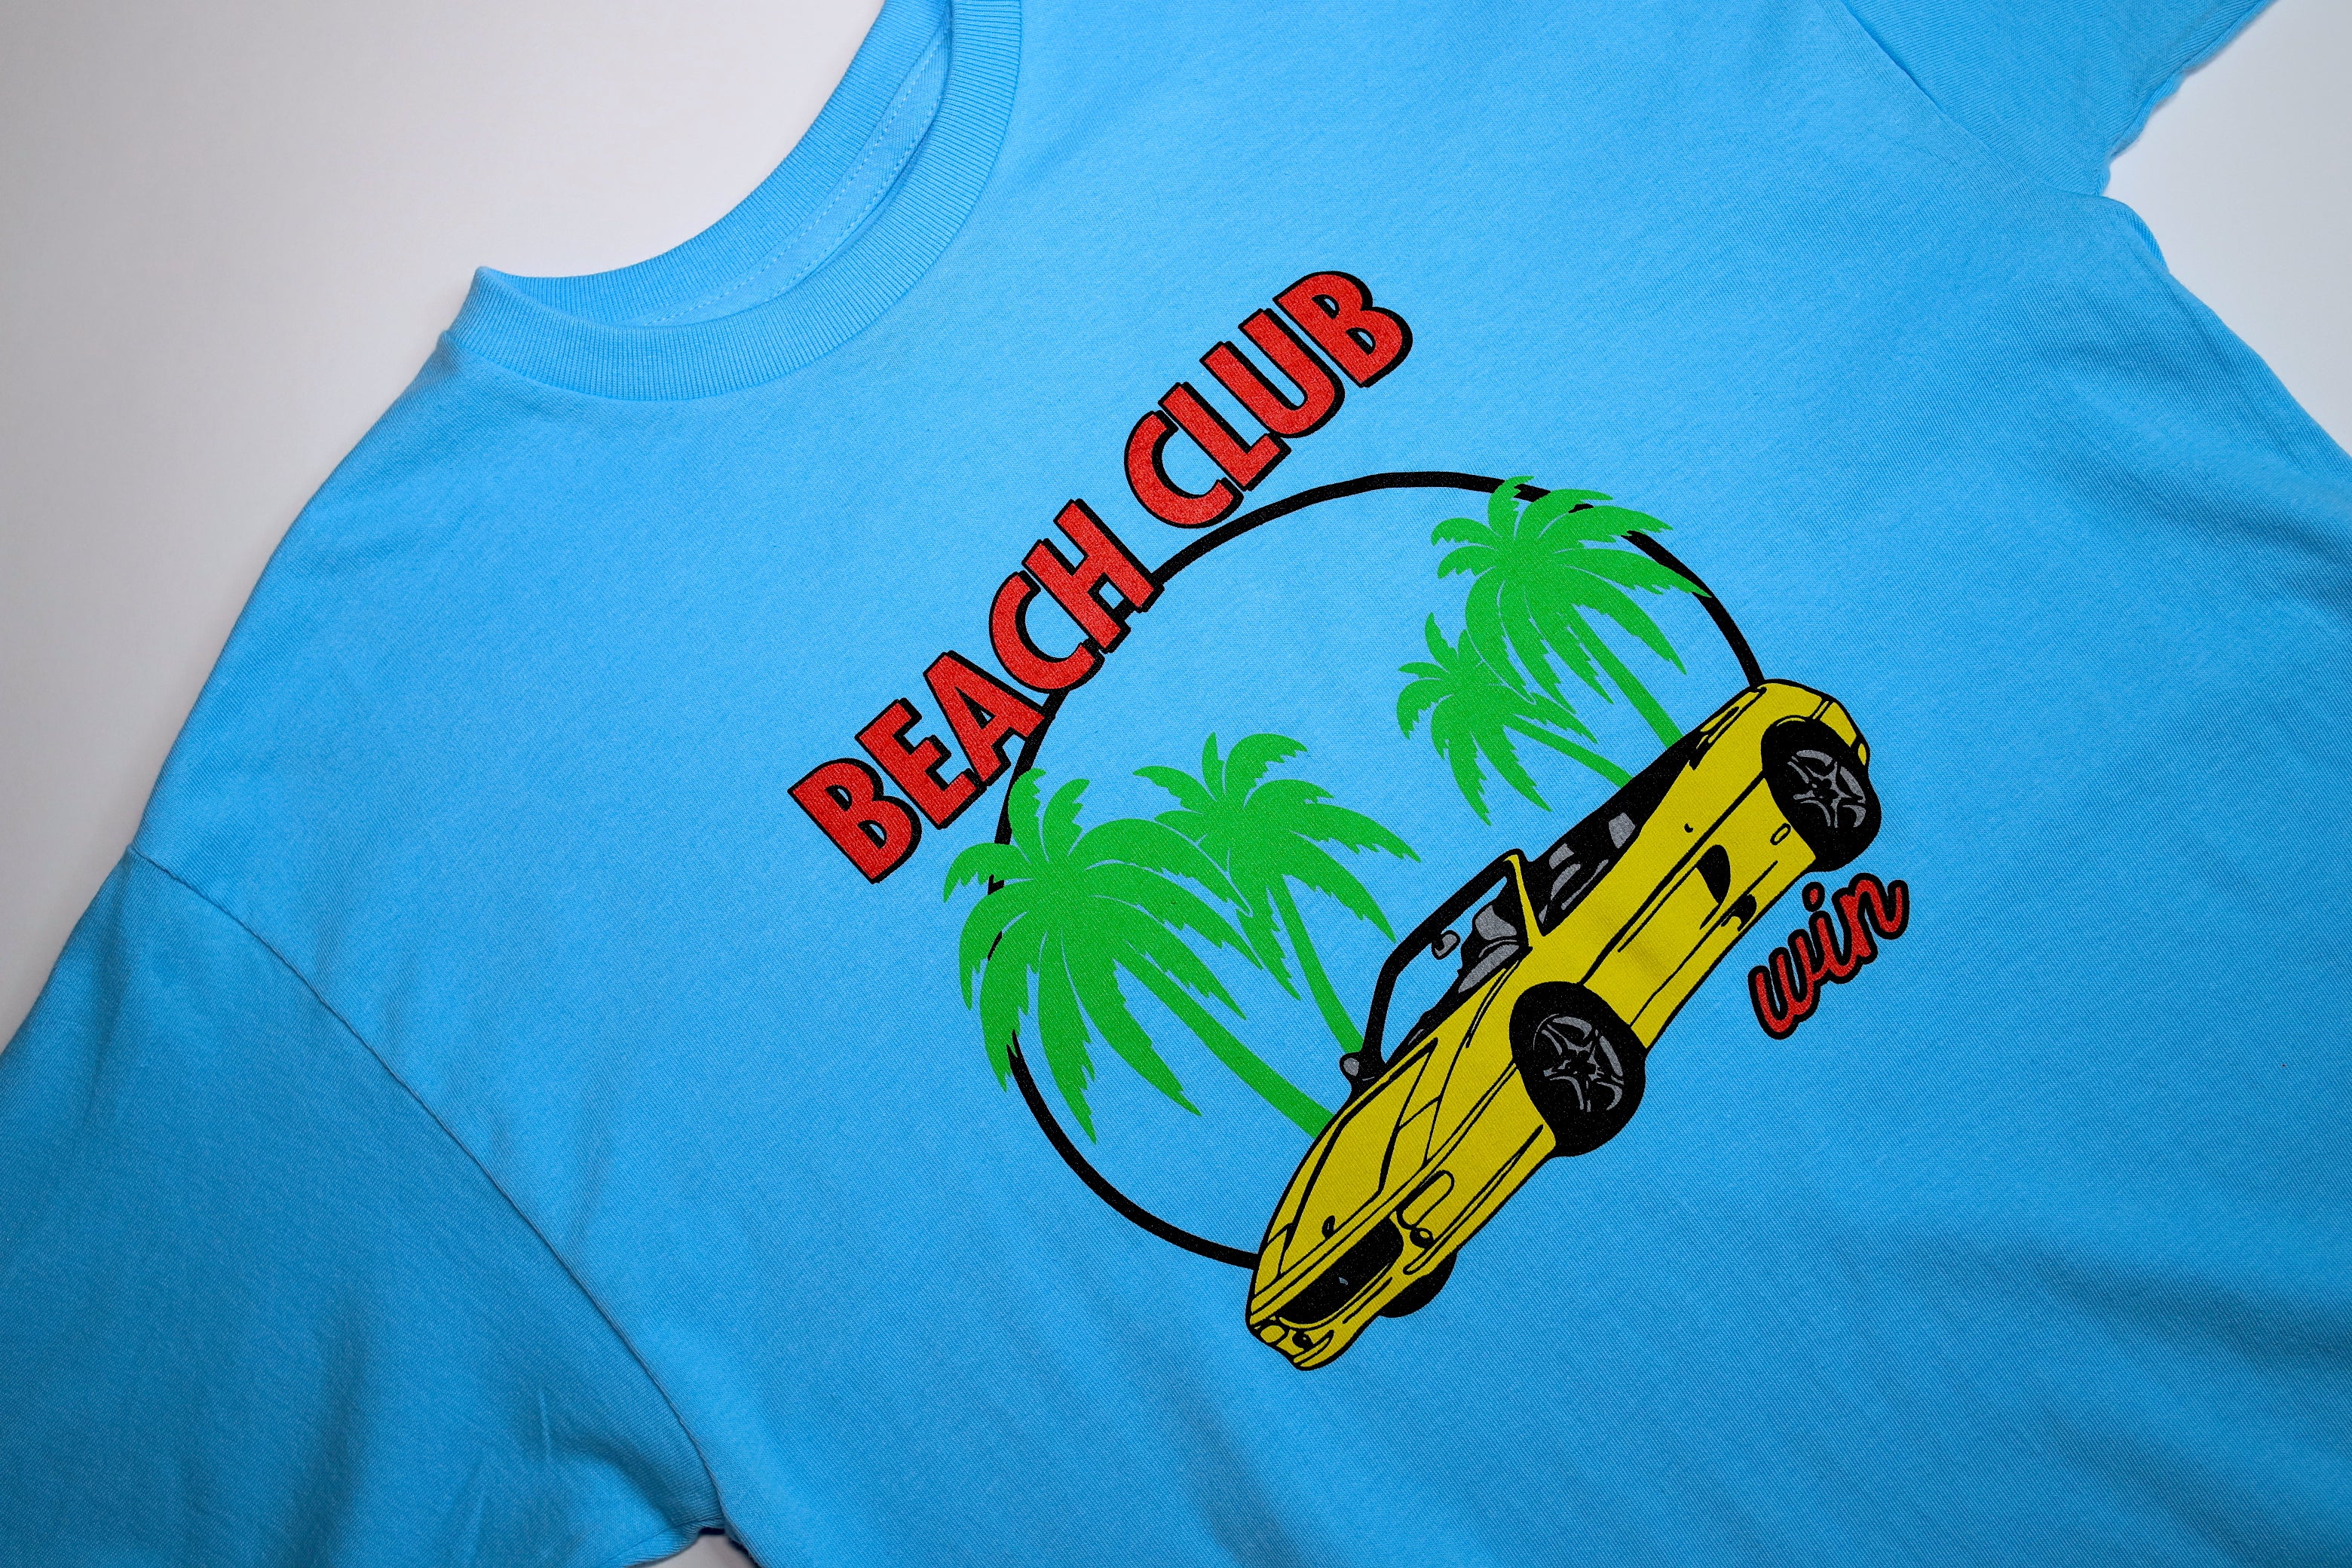 WIN "Beach Club" T-shirt - Aqua